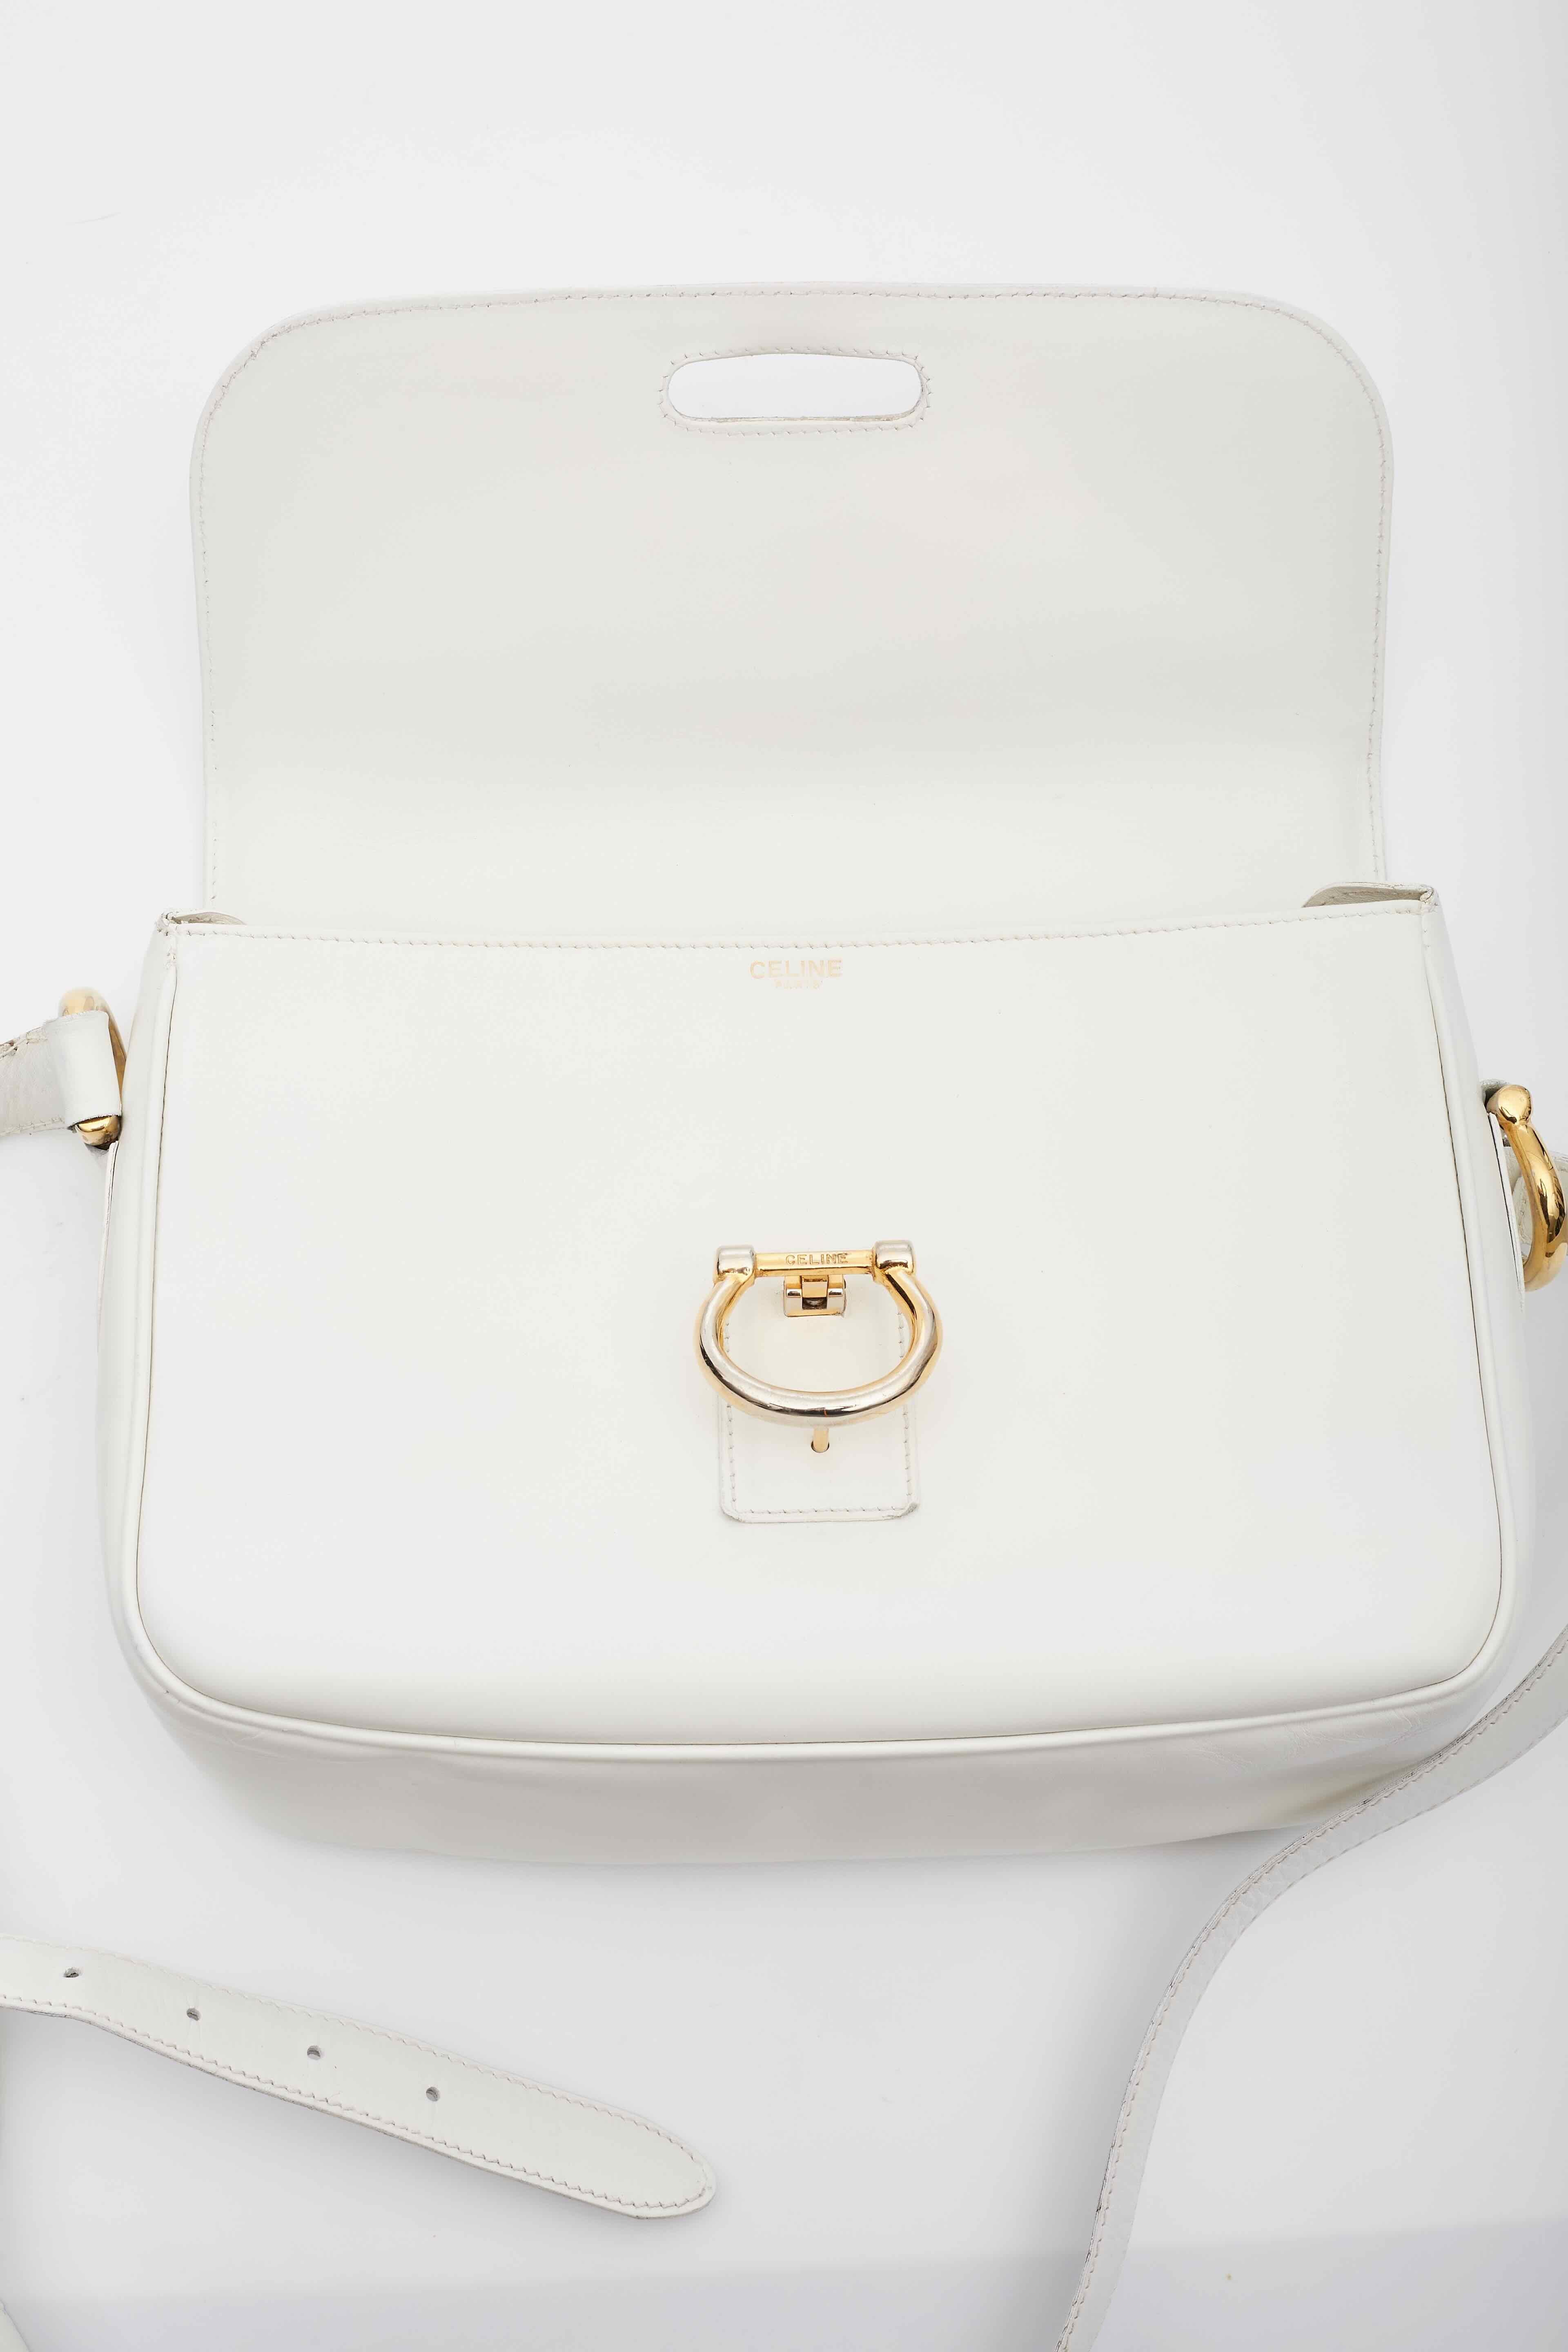 Celine Vintage White Leather Shoulder Bag For Sale 8